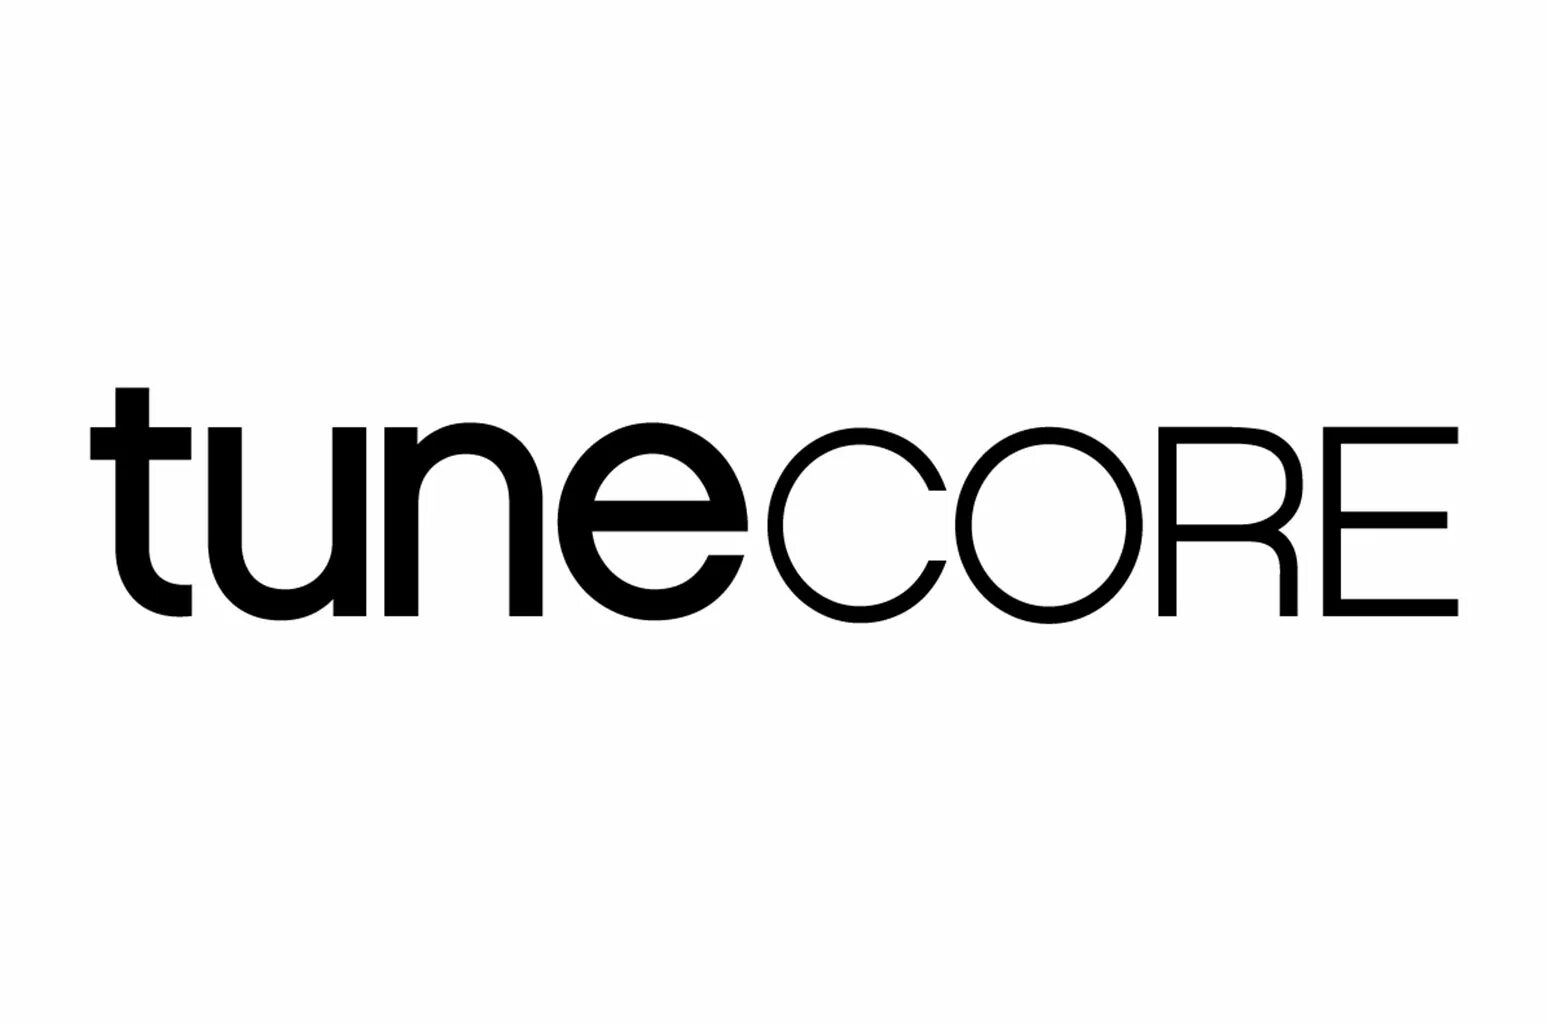 Tune core. TUNECORE. TUNECORE logo. DISTROKID logo. TUNECORE distribution.